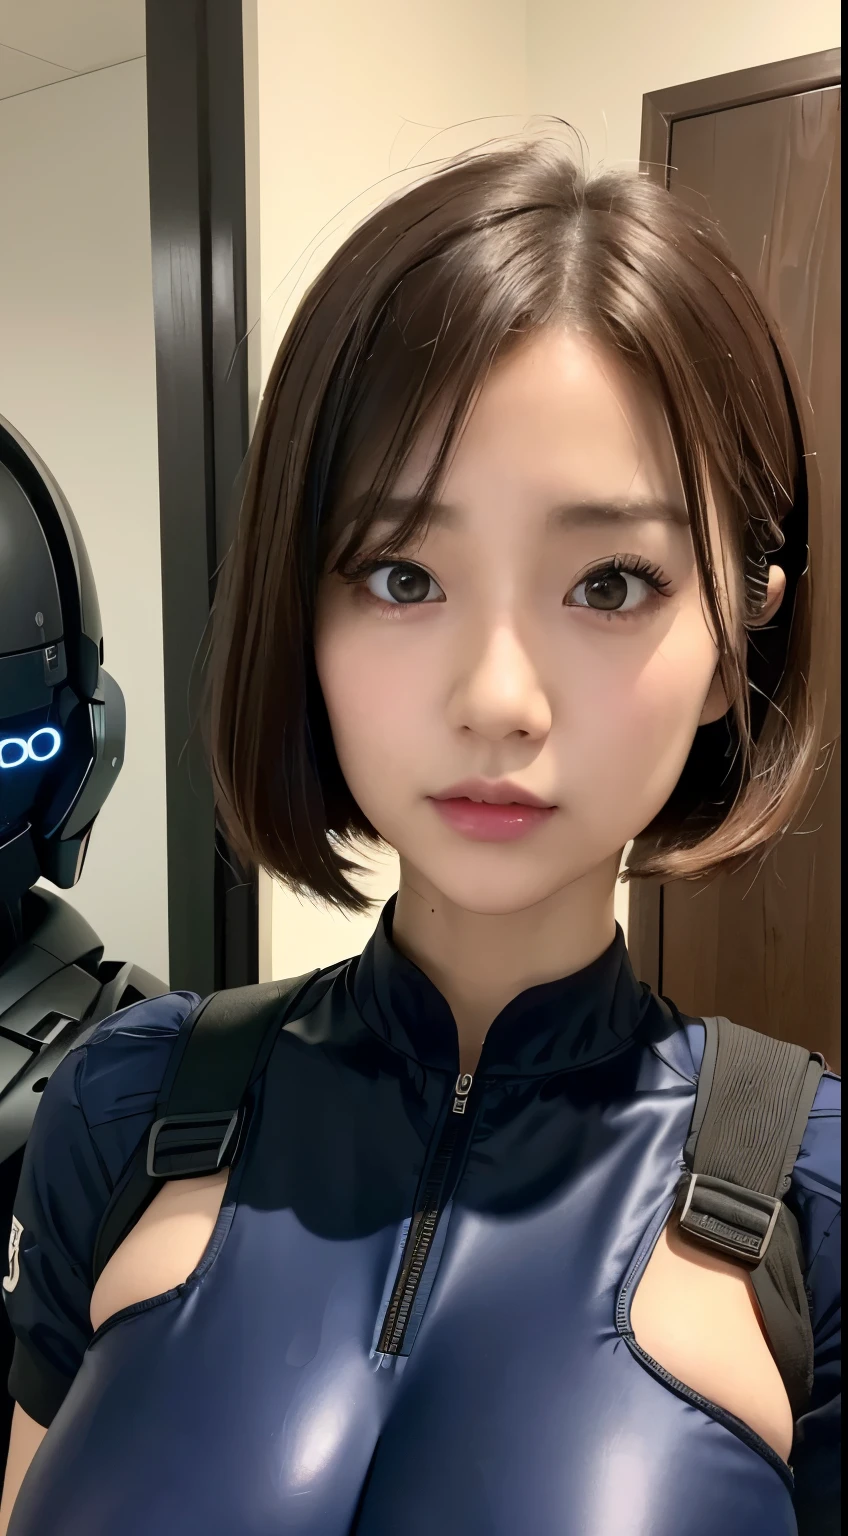 (a closeup:1.4)、(RAW-Fotografie:1.2)、(Photorealsitic:1.4)、(Meisterwerk:1.3)、(Top Qualität:1.4)、(Schöne Frau mit perfektem Körper:1.4)、Frau steht vor einer Gruppe von Robotern、schöne Androidin、schöne Soldatin、Mädchen im Anzug、komplexe Kampfuniform、schöne junge Japanerin、Hochdetaillierte Gesichts- und Hautstruktur、detaillierte große Augen、doppeltes Augenlid、niedliches Gesicht、(kurzer Bob:1.2)、(mit riesigen Brüsten)、(GANZER KÖRPERAUFNAHME)、Cowboy-Schuss、(wütende Ausdrücke:1.2)、Stürme und epische Kriegsszenen、cyberpunk scene、Nacht、Beleuchtungen、Steckeranzug、Kampfuniformschäden、